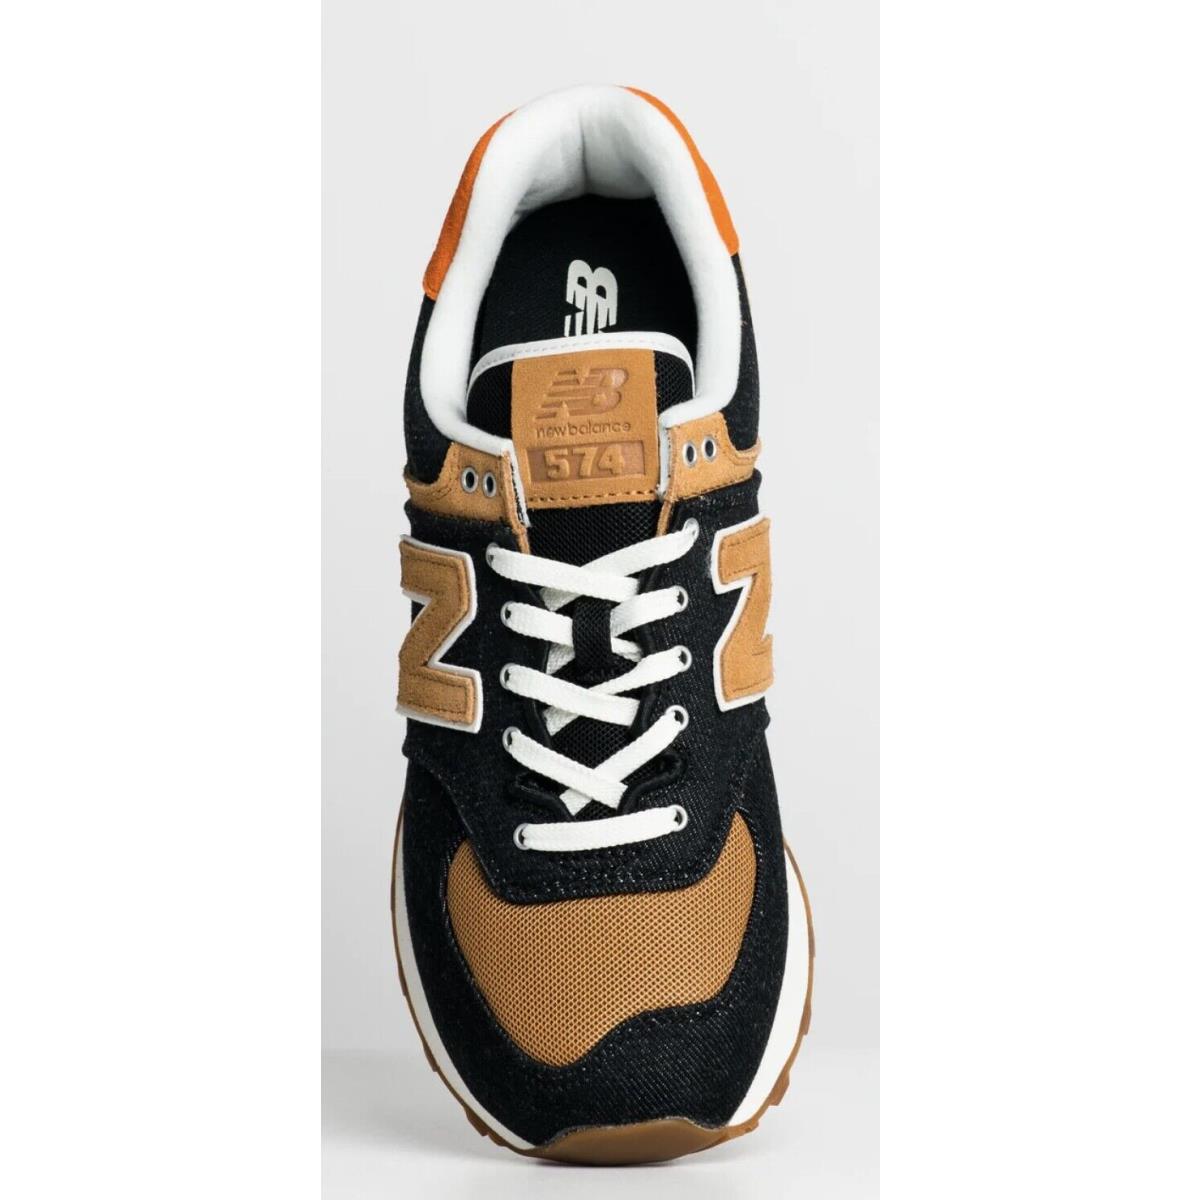 New Balance shoes  - Black White Orange Beige 5